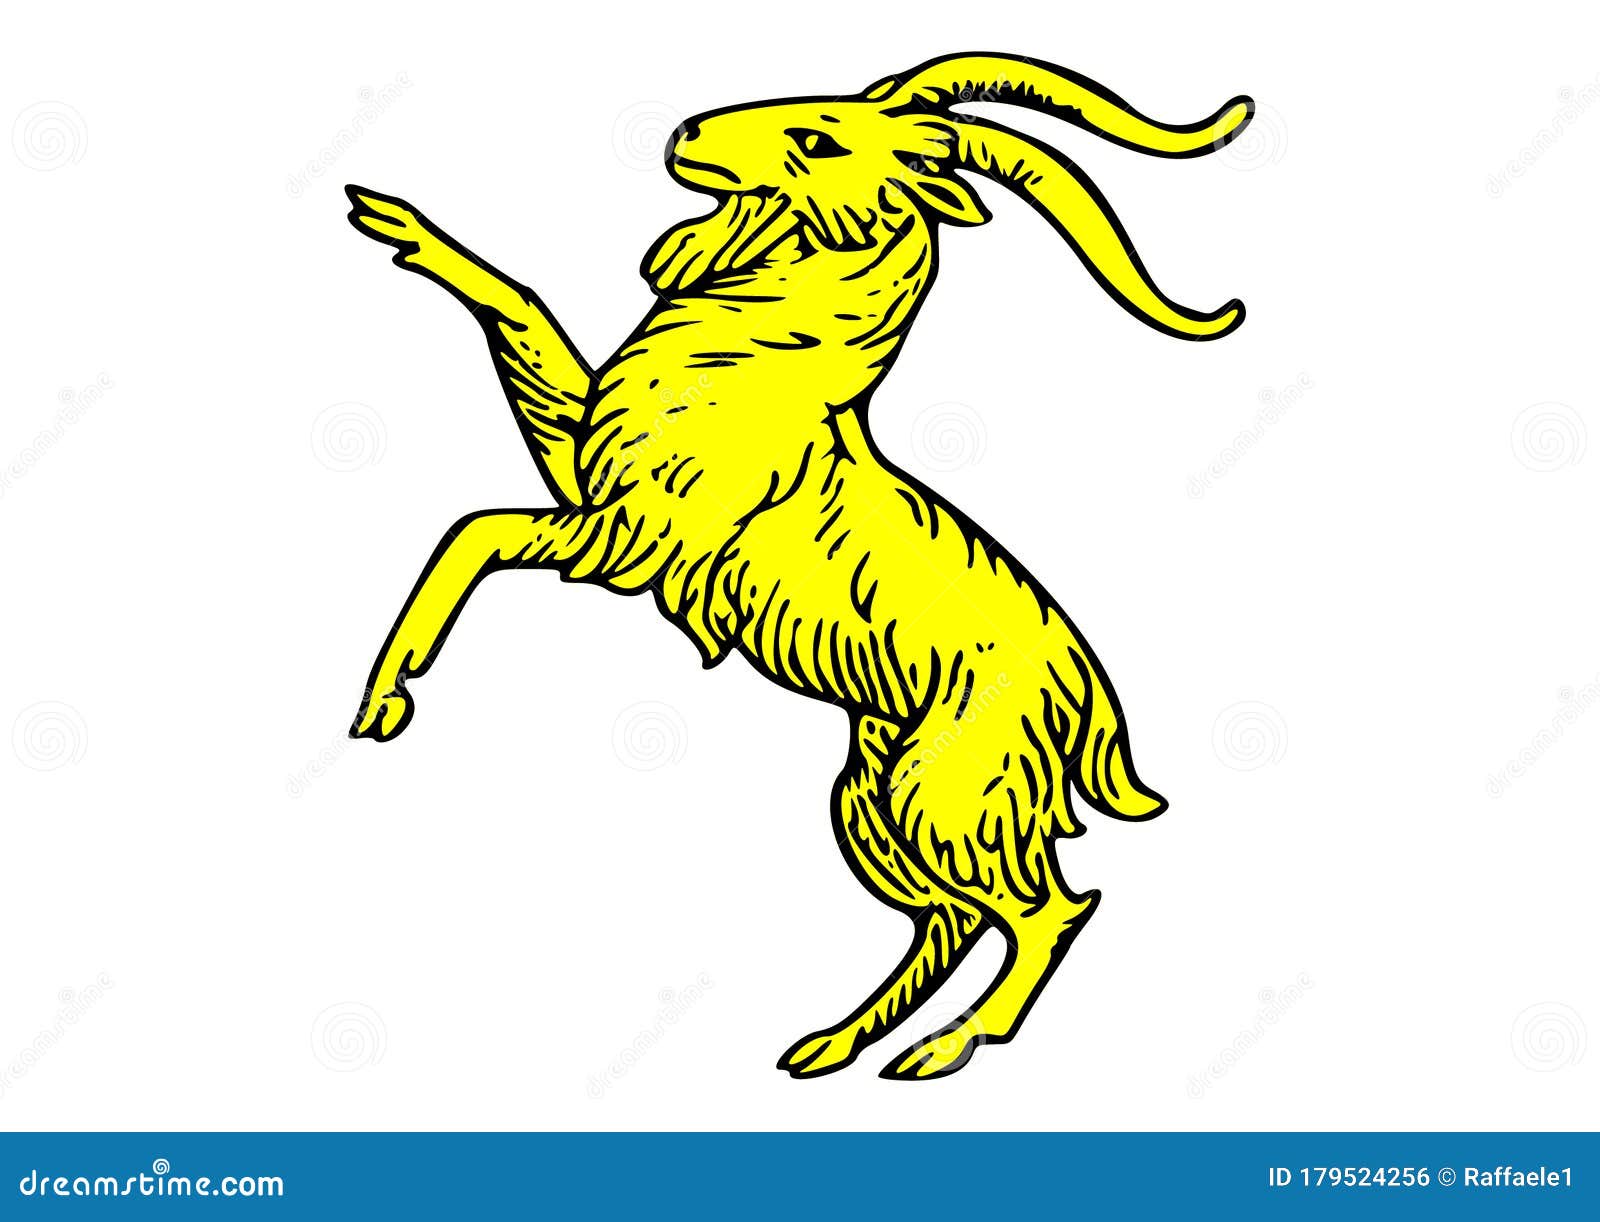 araldic logo representing a goat rampant